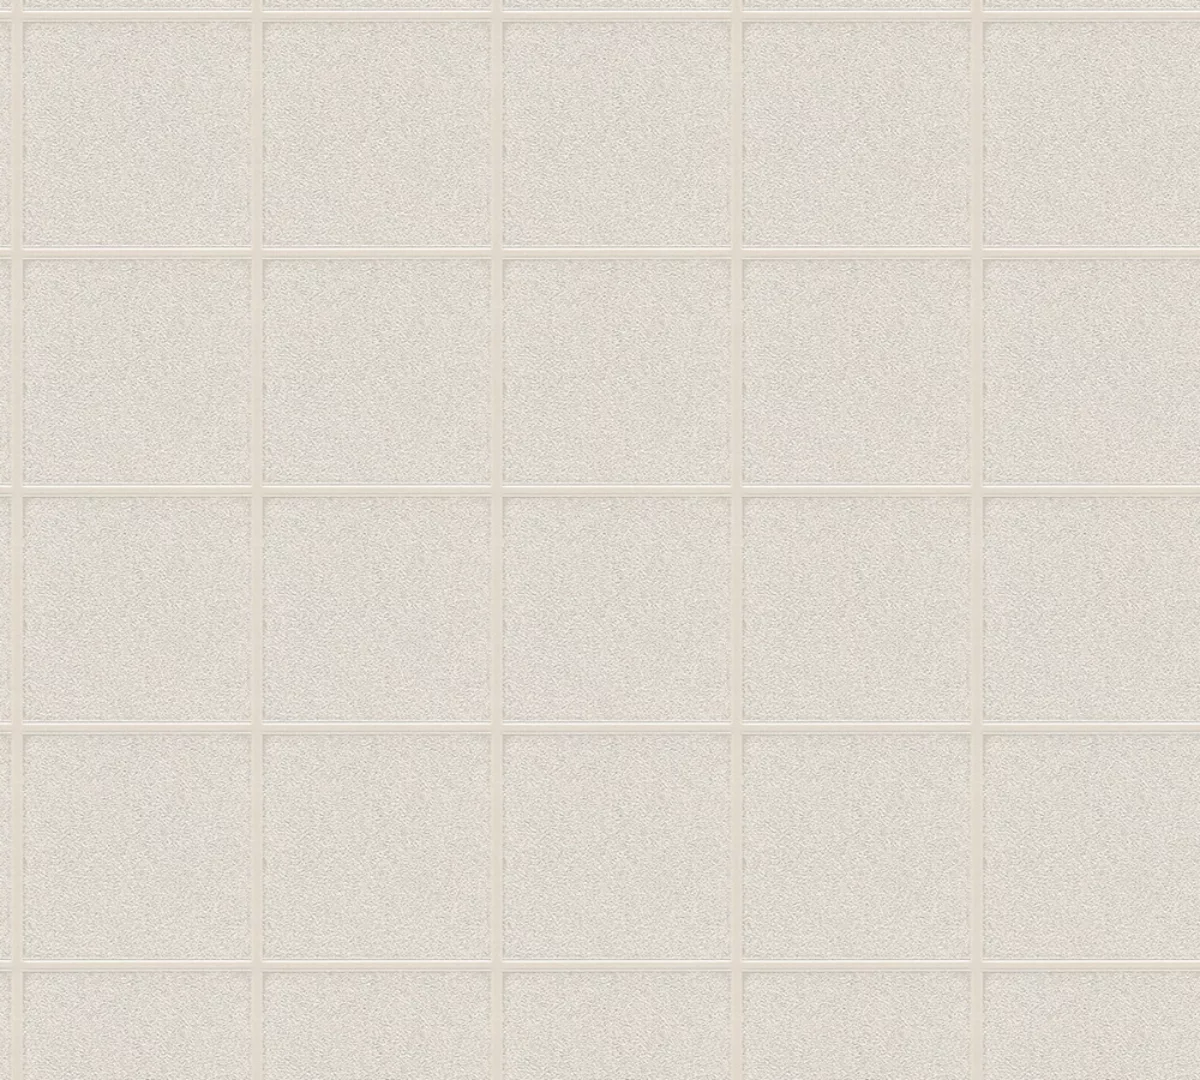 Bricoflor Hellgraue Tapete in Kacheloptik Fliesen Tapete aus Vlies und Viny günstig online kaufen